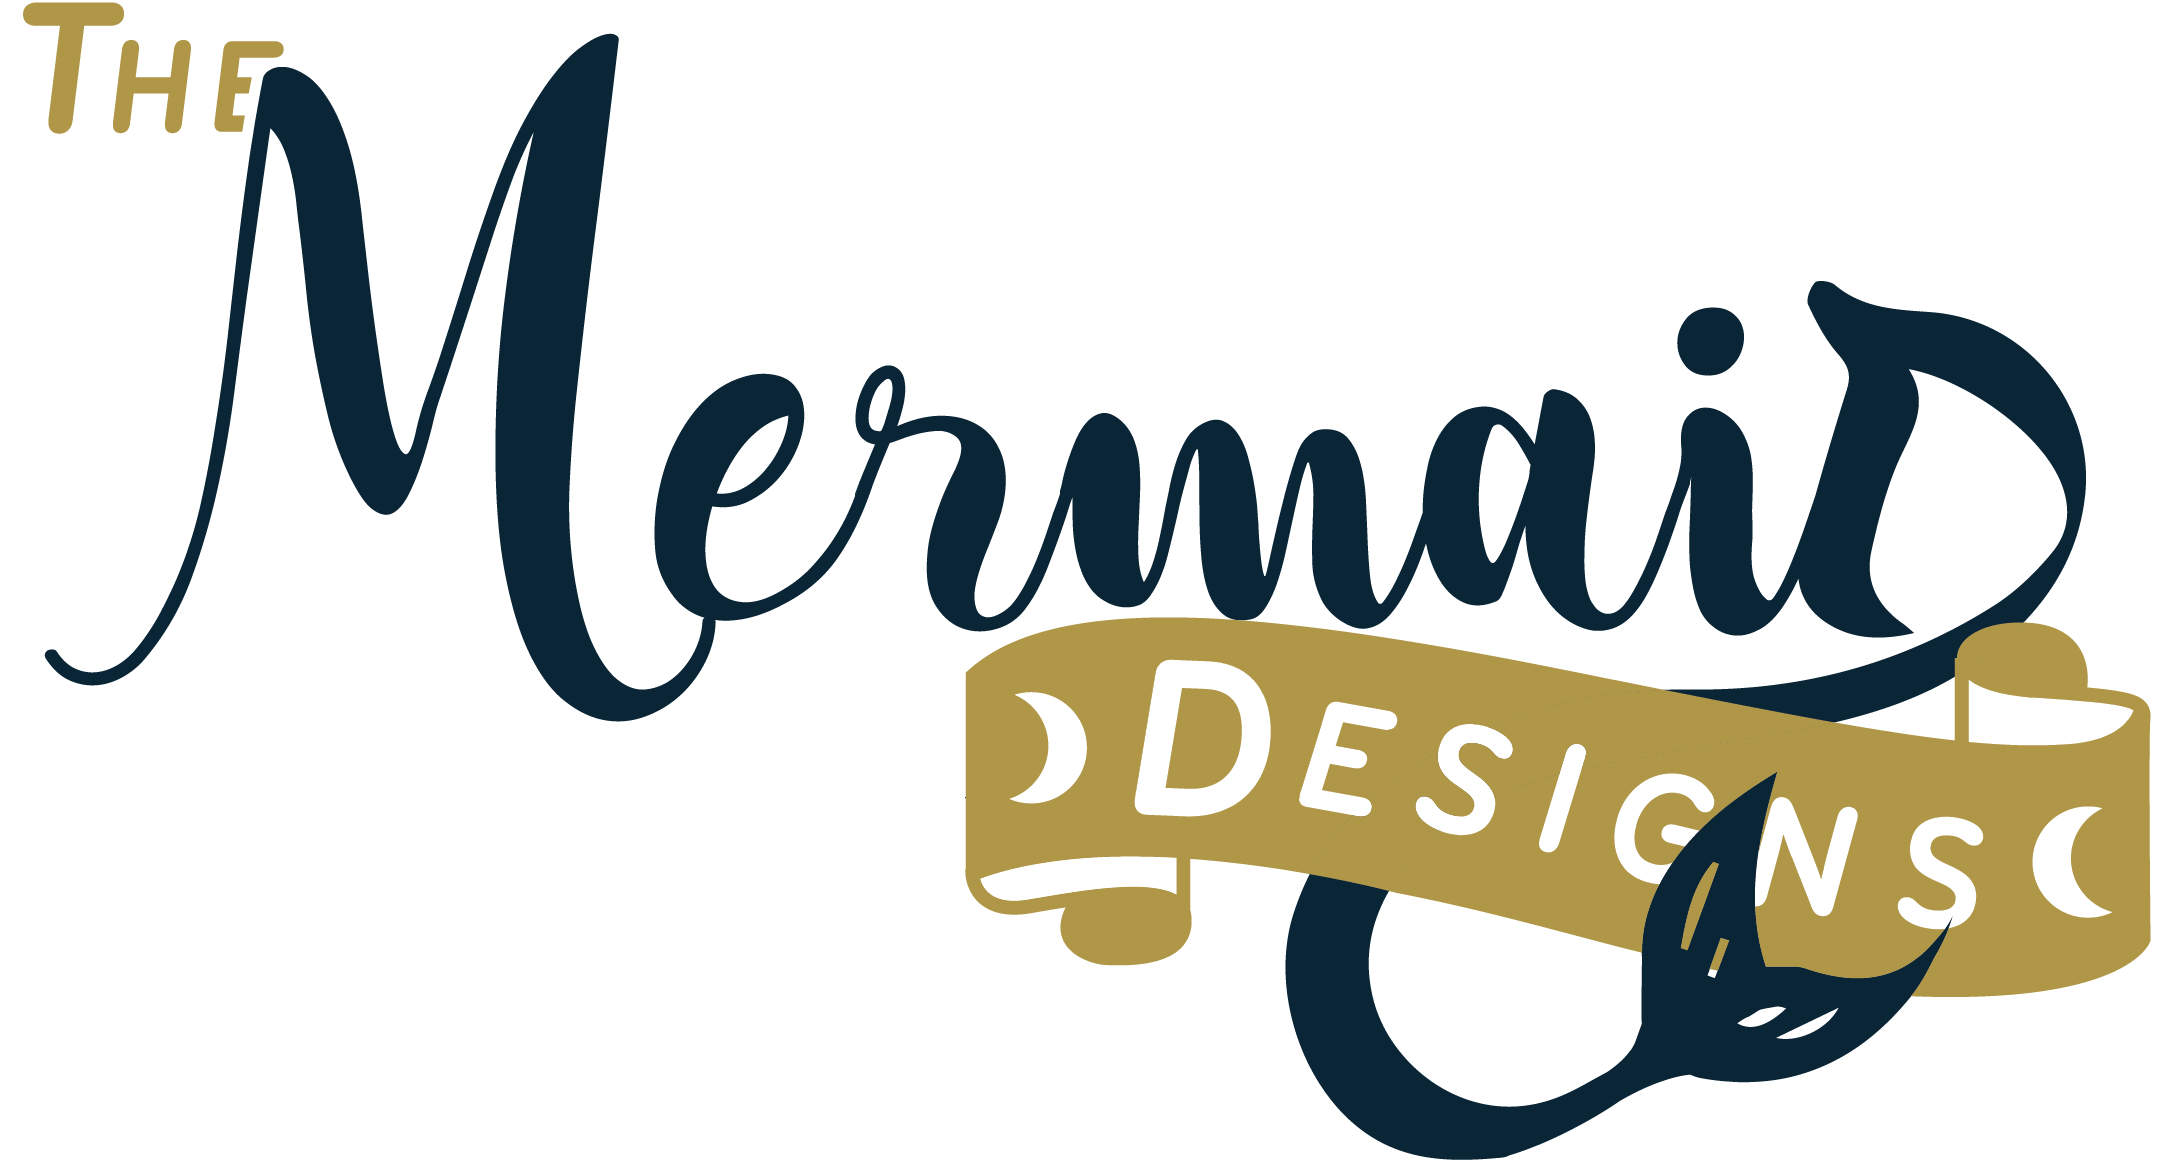 The Mermaid Designs